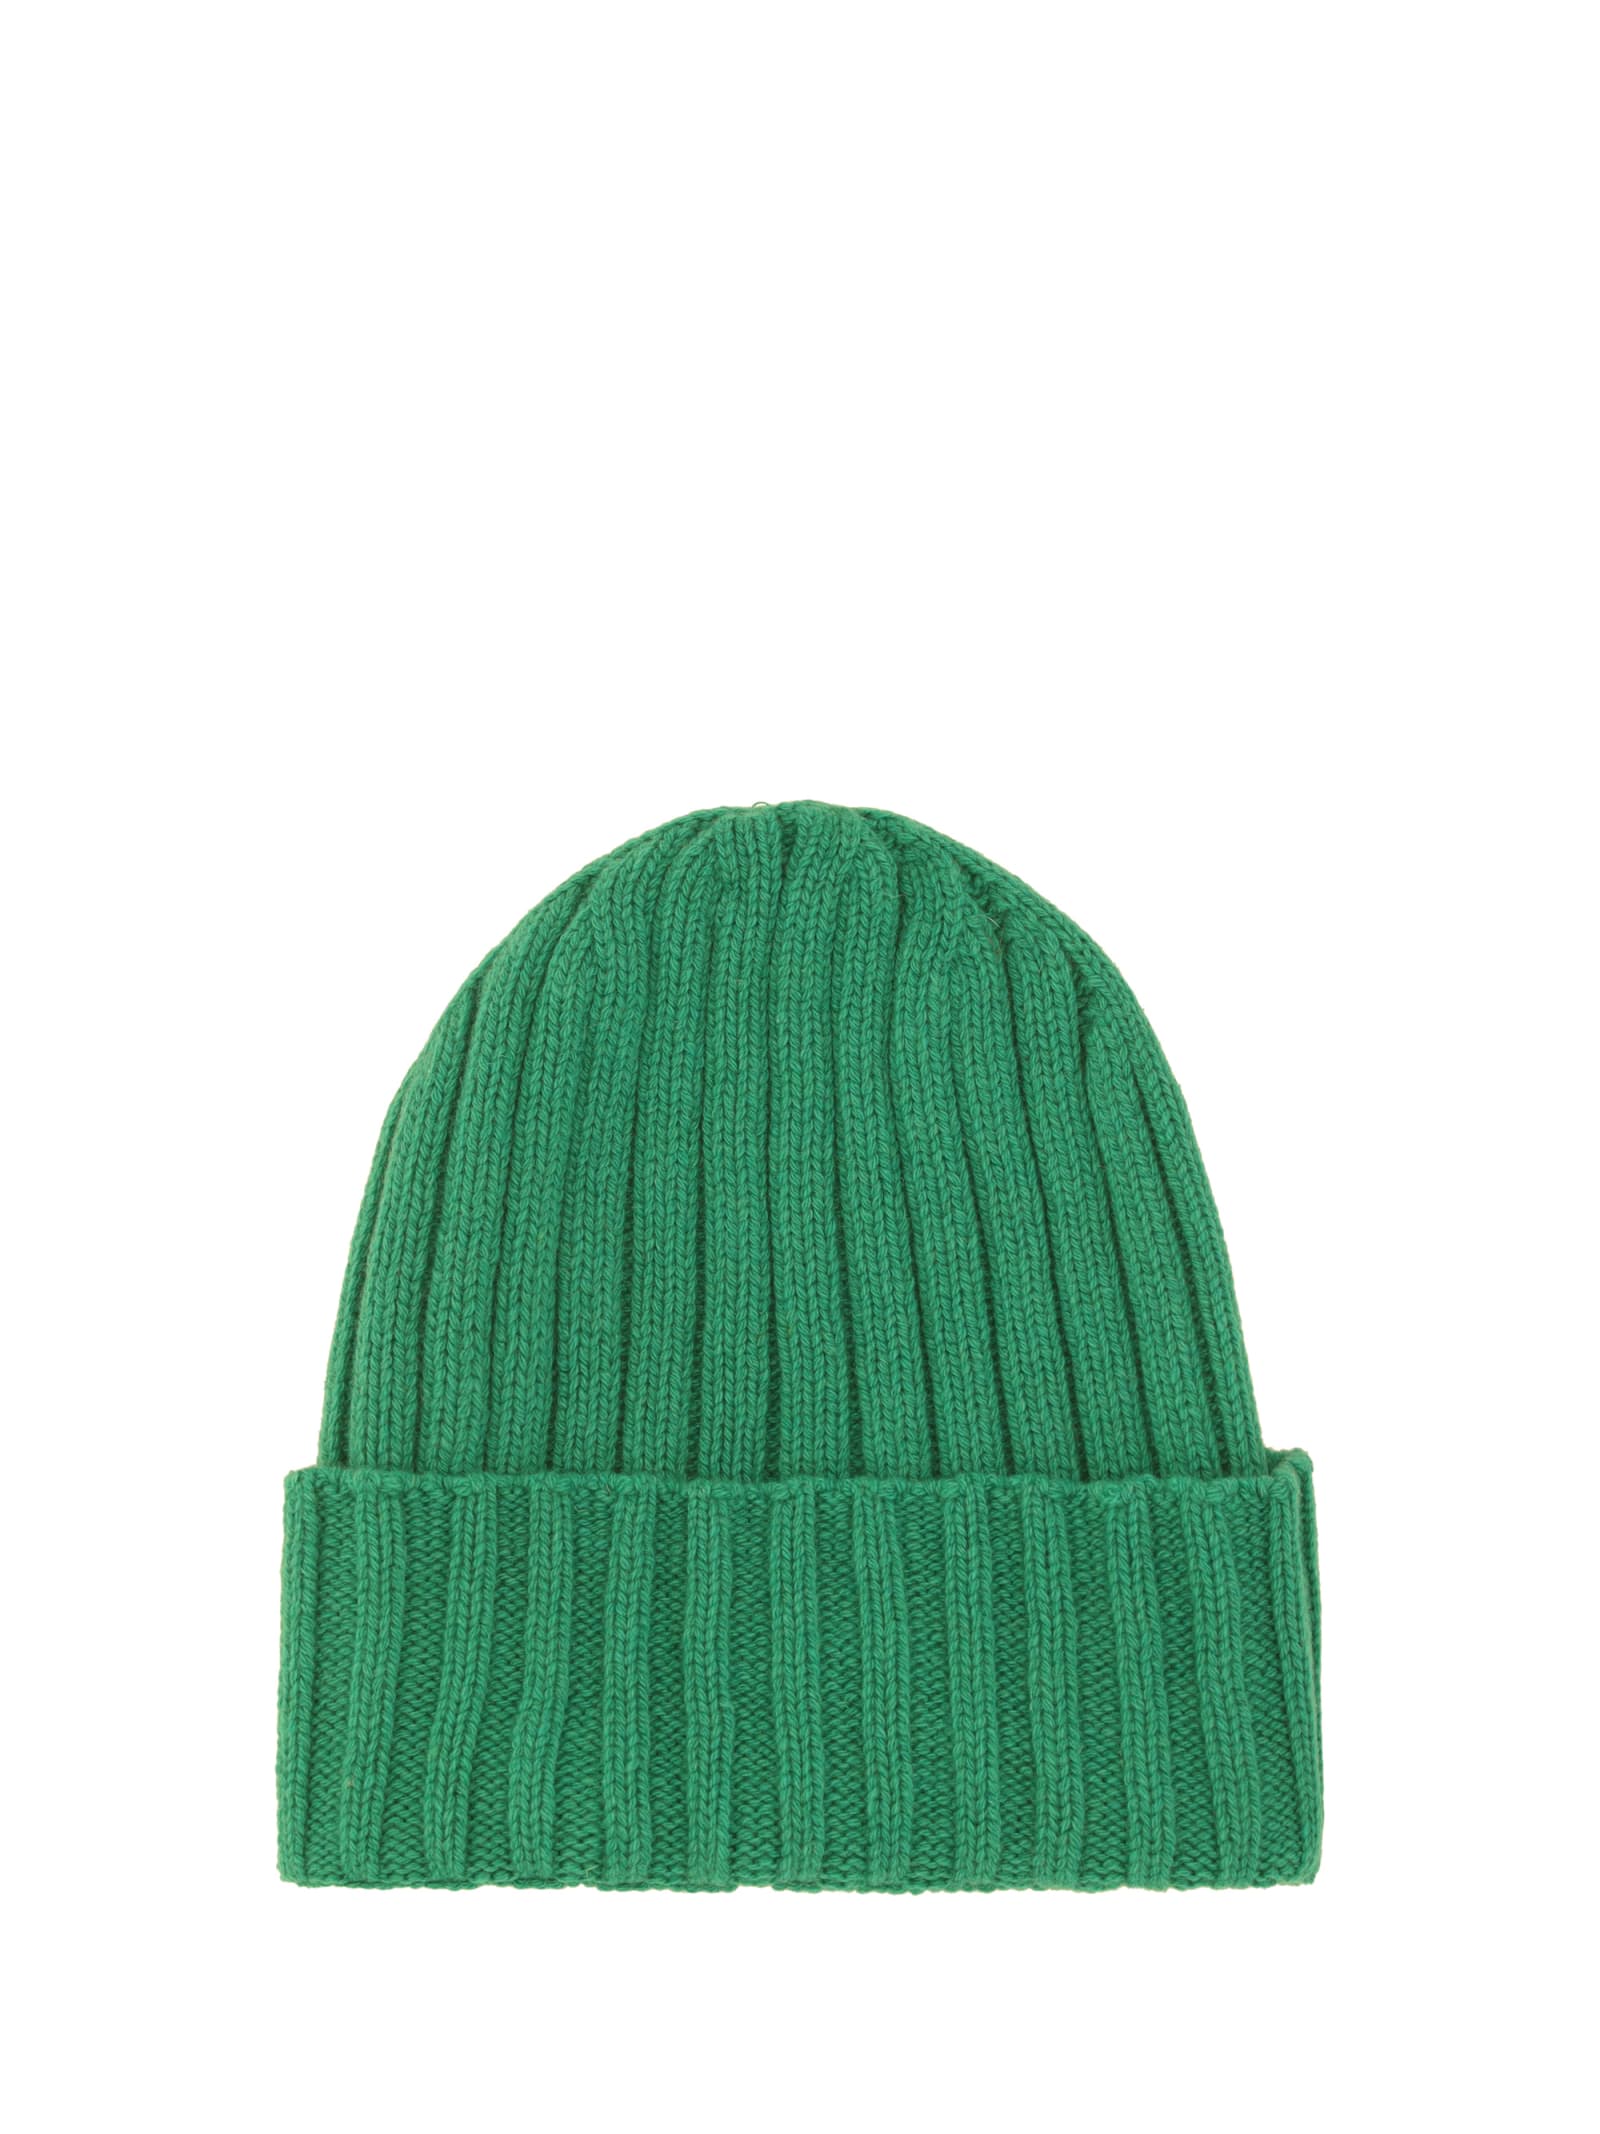 Aragona Beanie Hat In Smeraldo